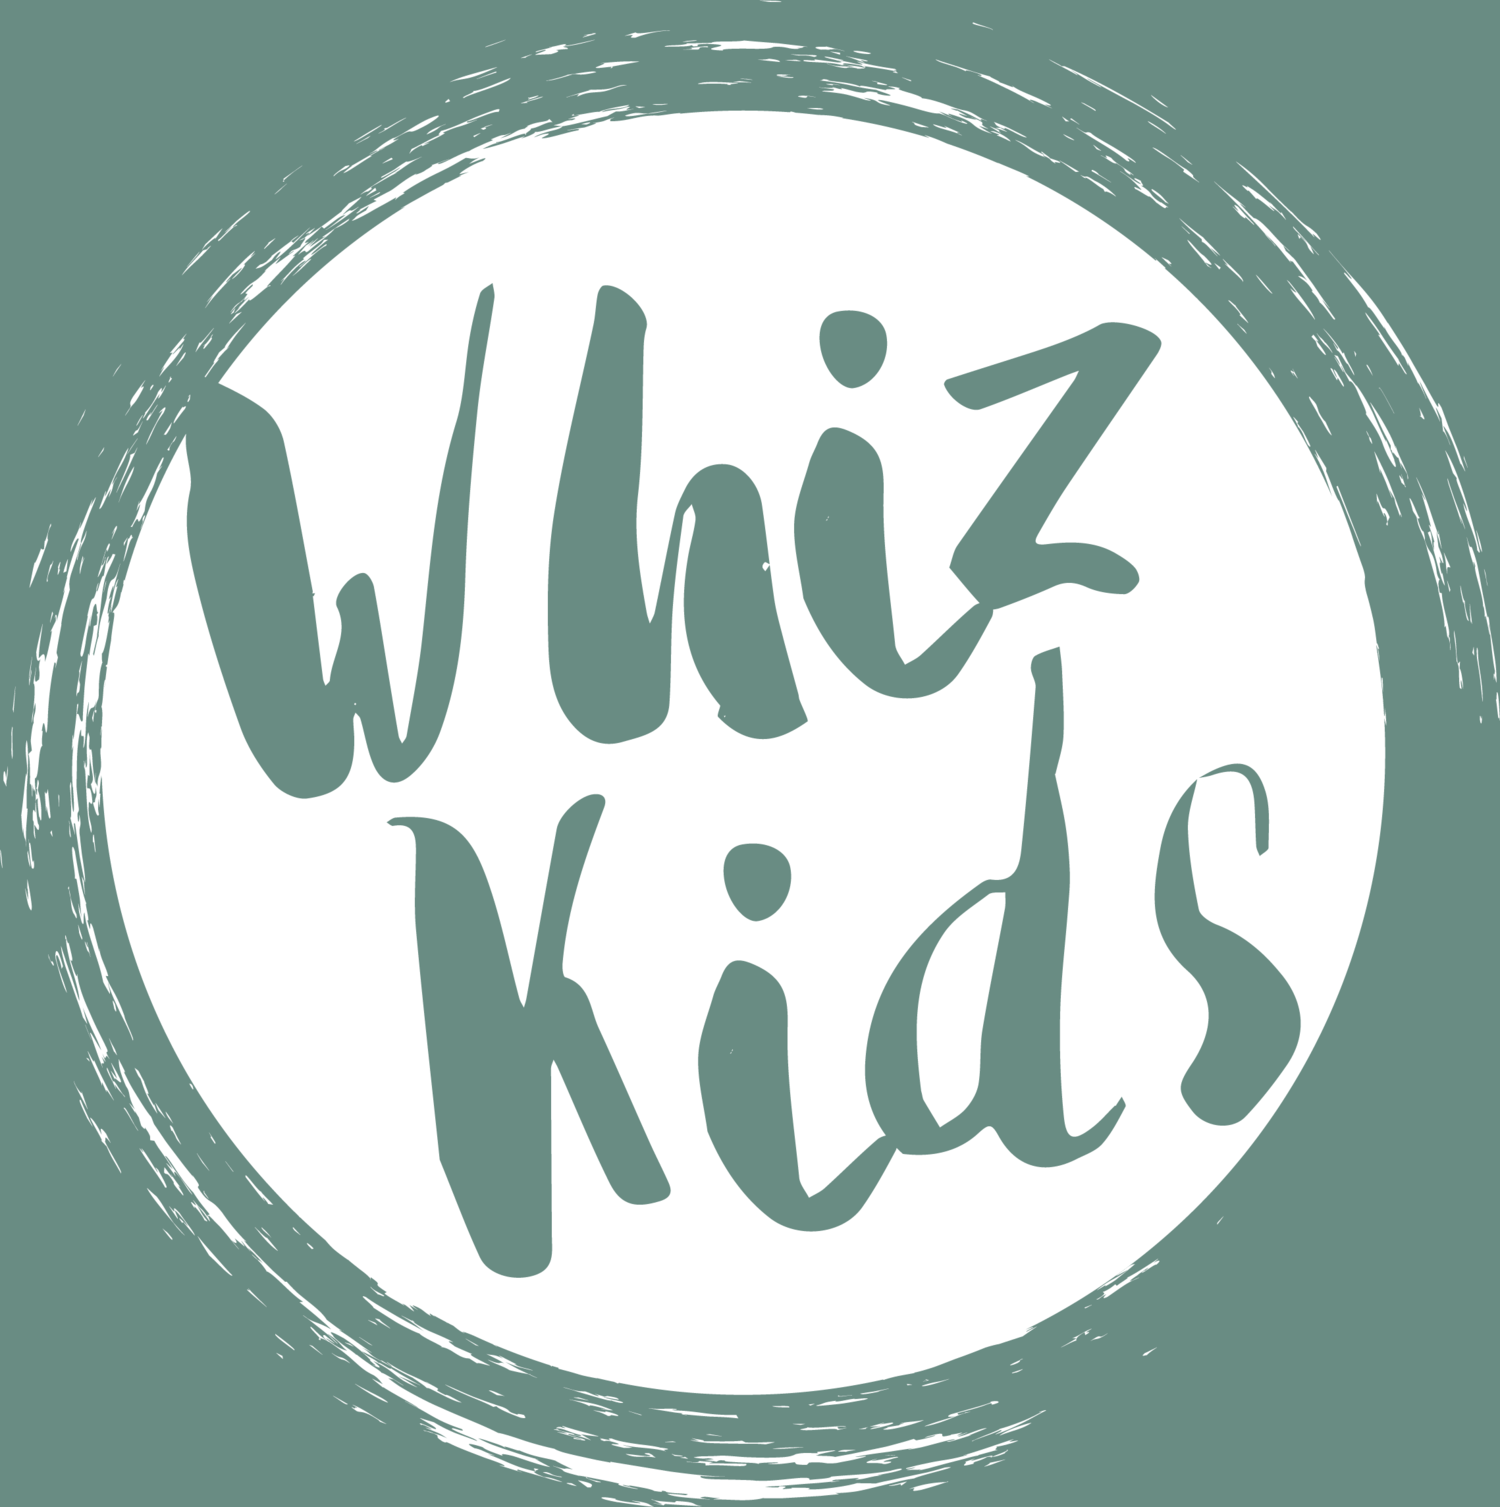 Whiz Kids